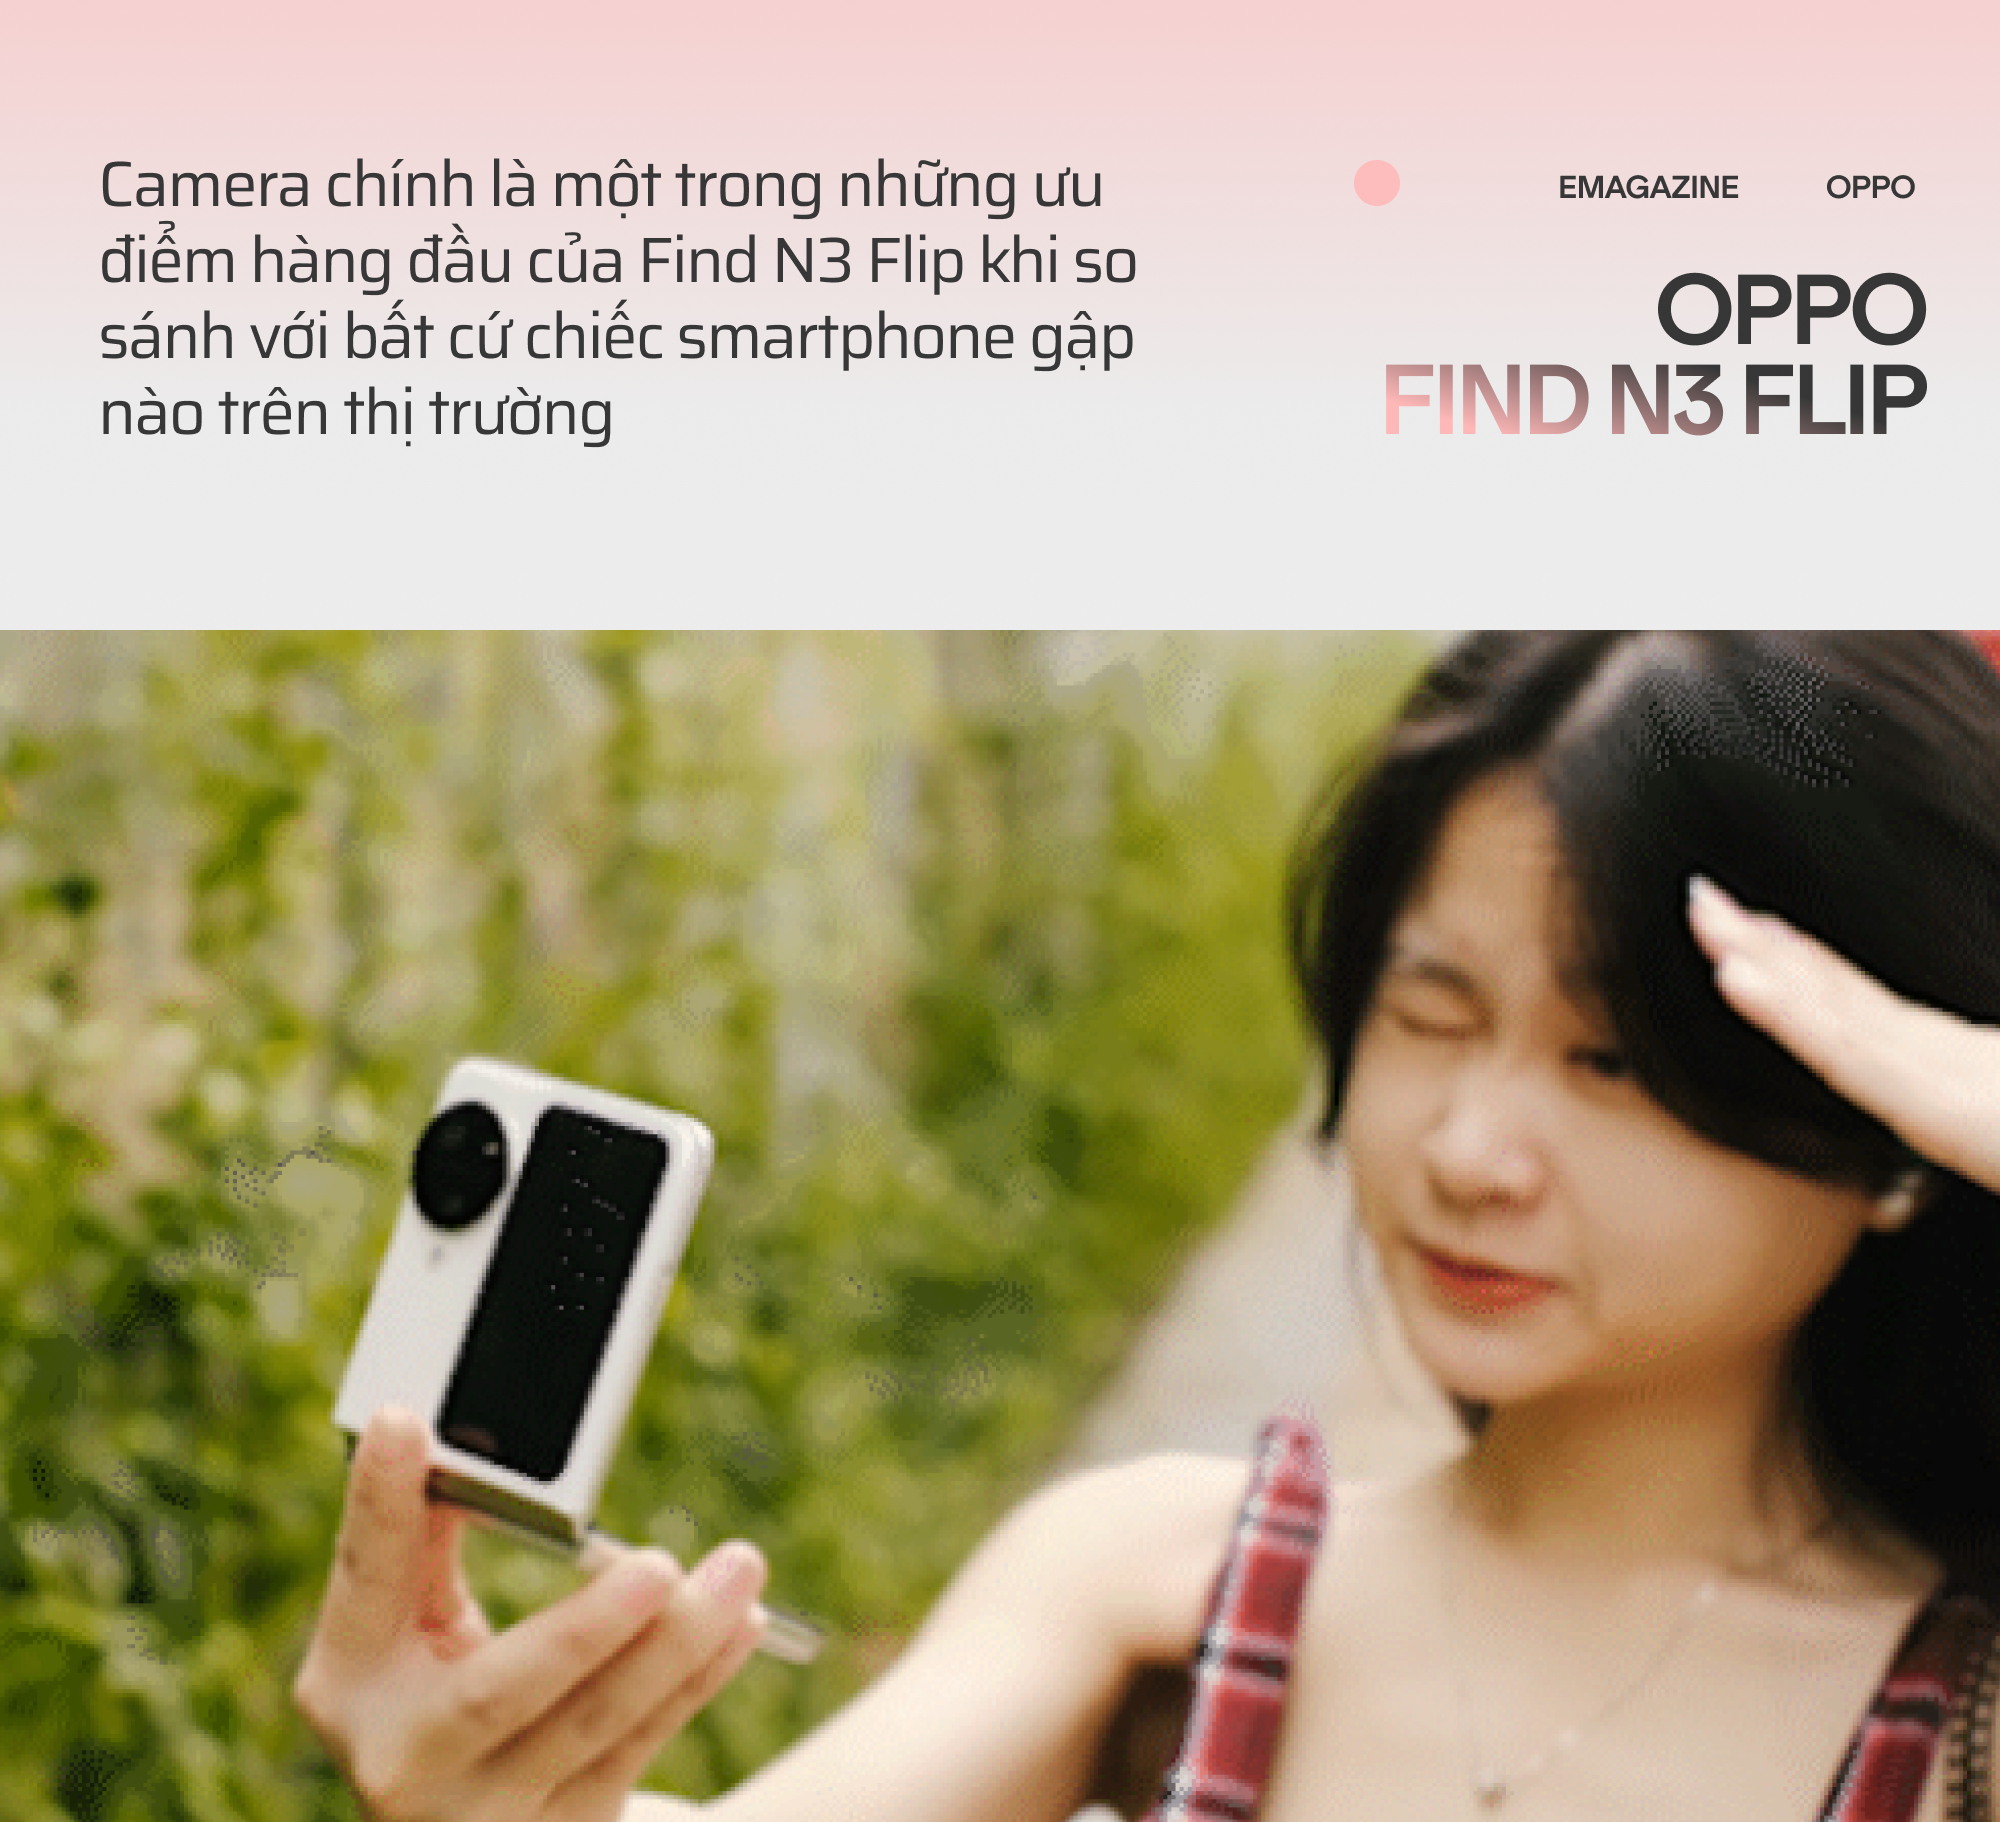 OPPO Find N3 Flip và hành trình đi tìm chiếc smartphone gập toàn diện - Ảnh 16.